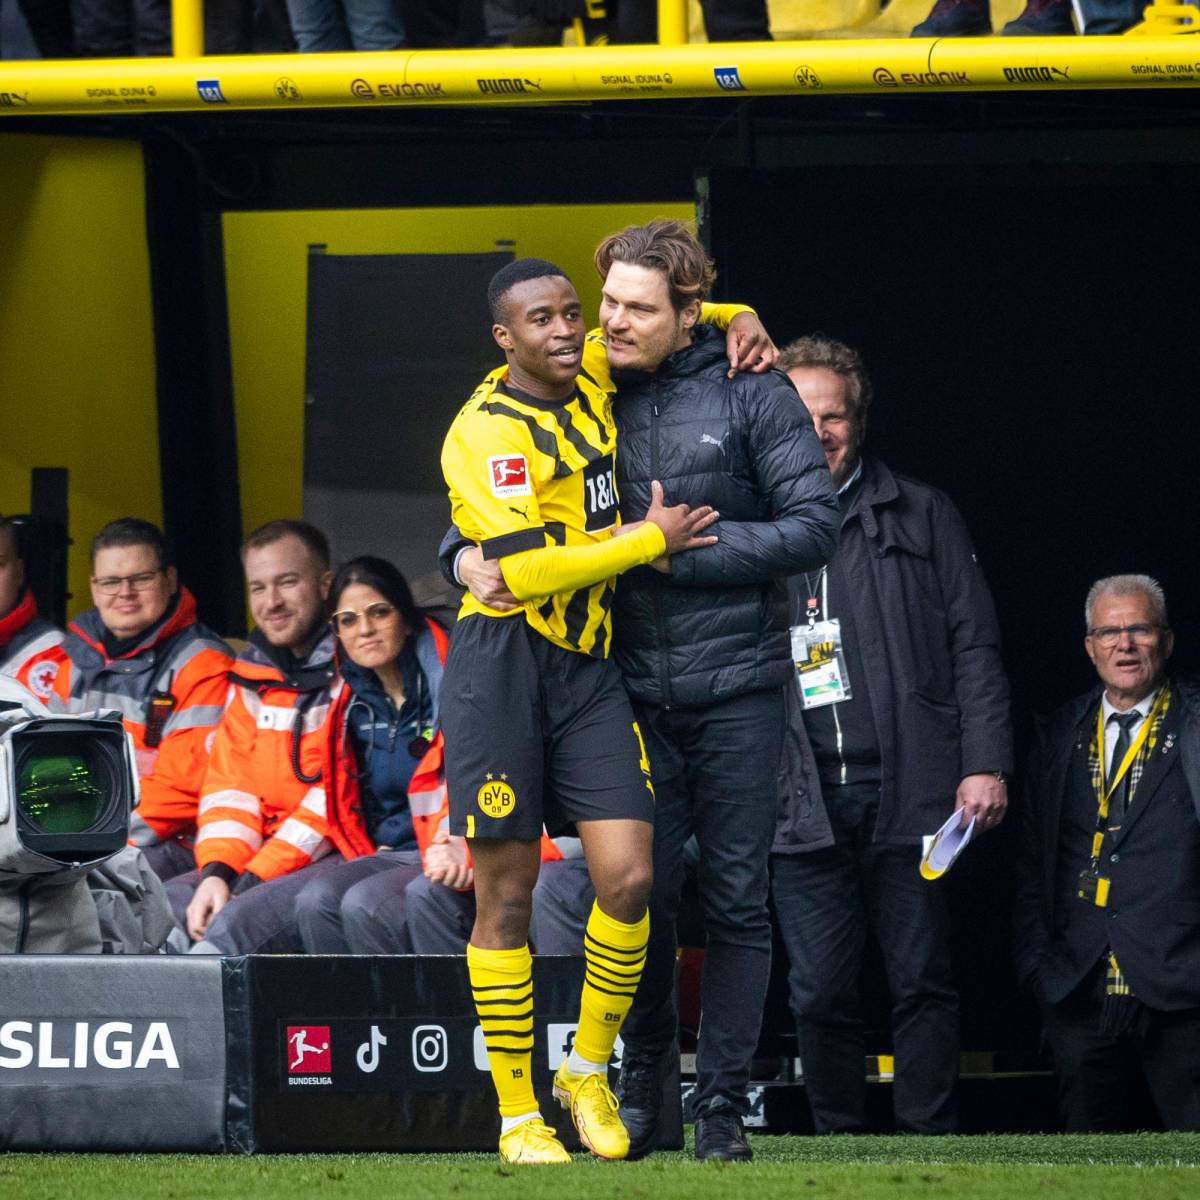 Borussia Dortmund: Matchwinner verrät Details- DAS sagte Terzic vor dem Spiel zu Moukoko